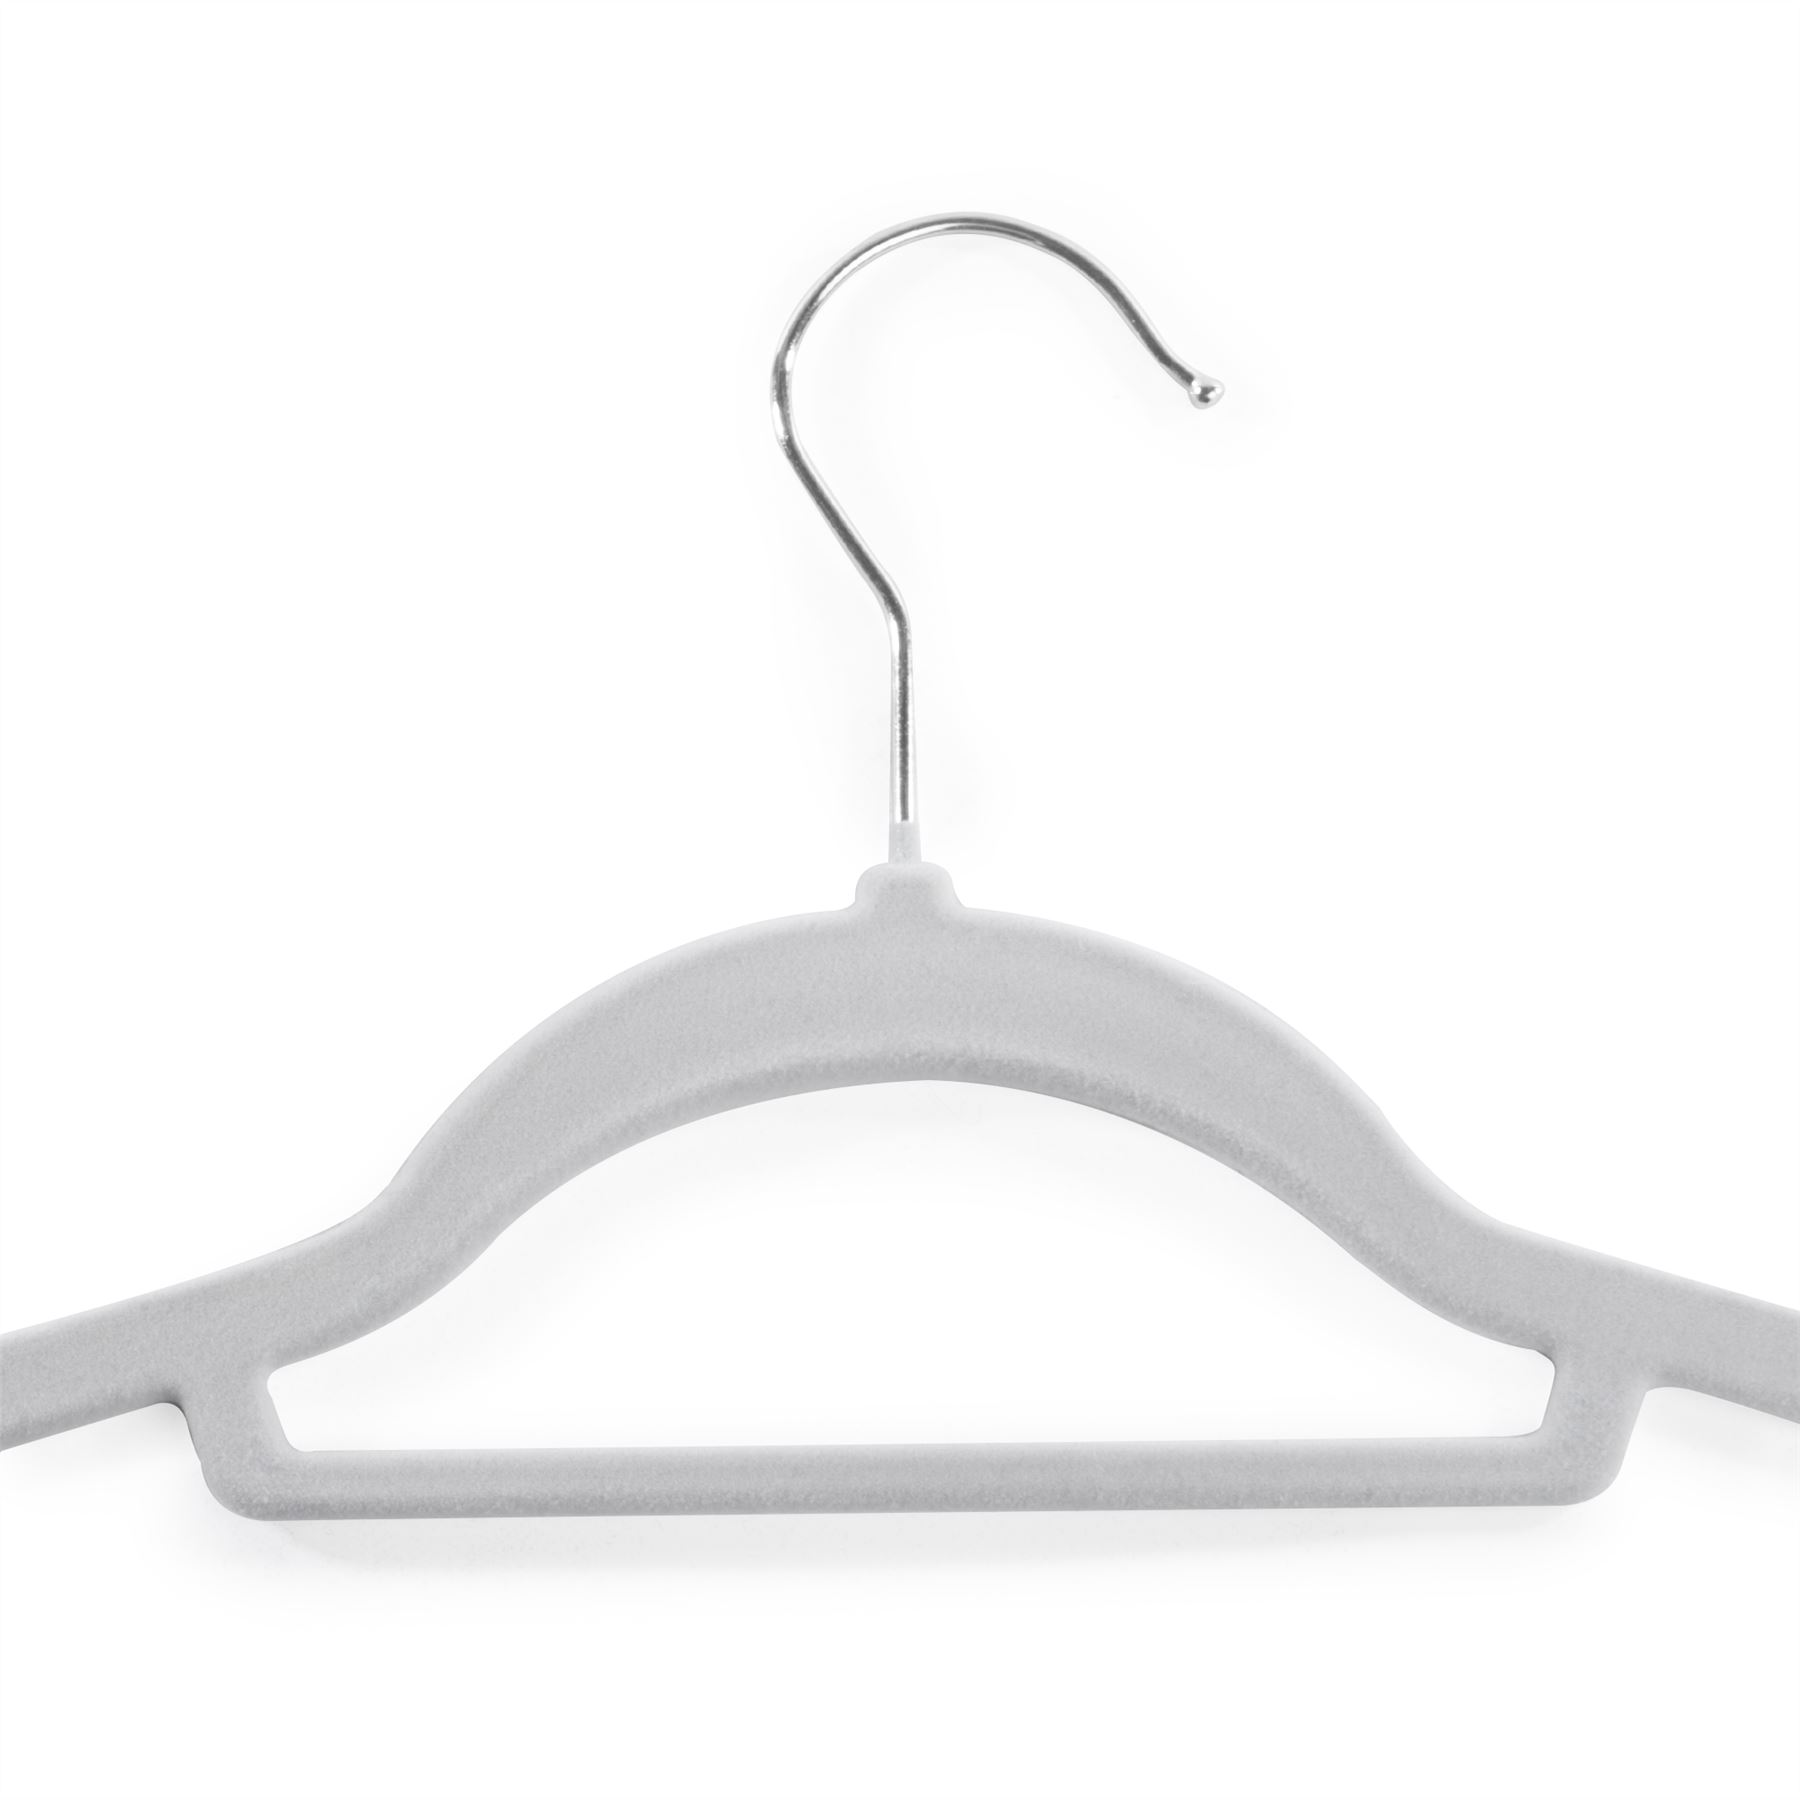 Velvet Coat Hangers Grey - Pack of 50 | M&W